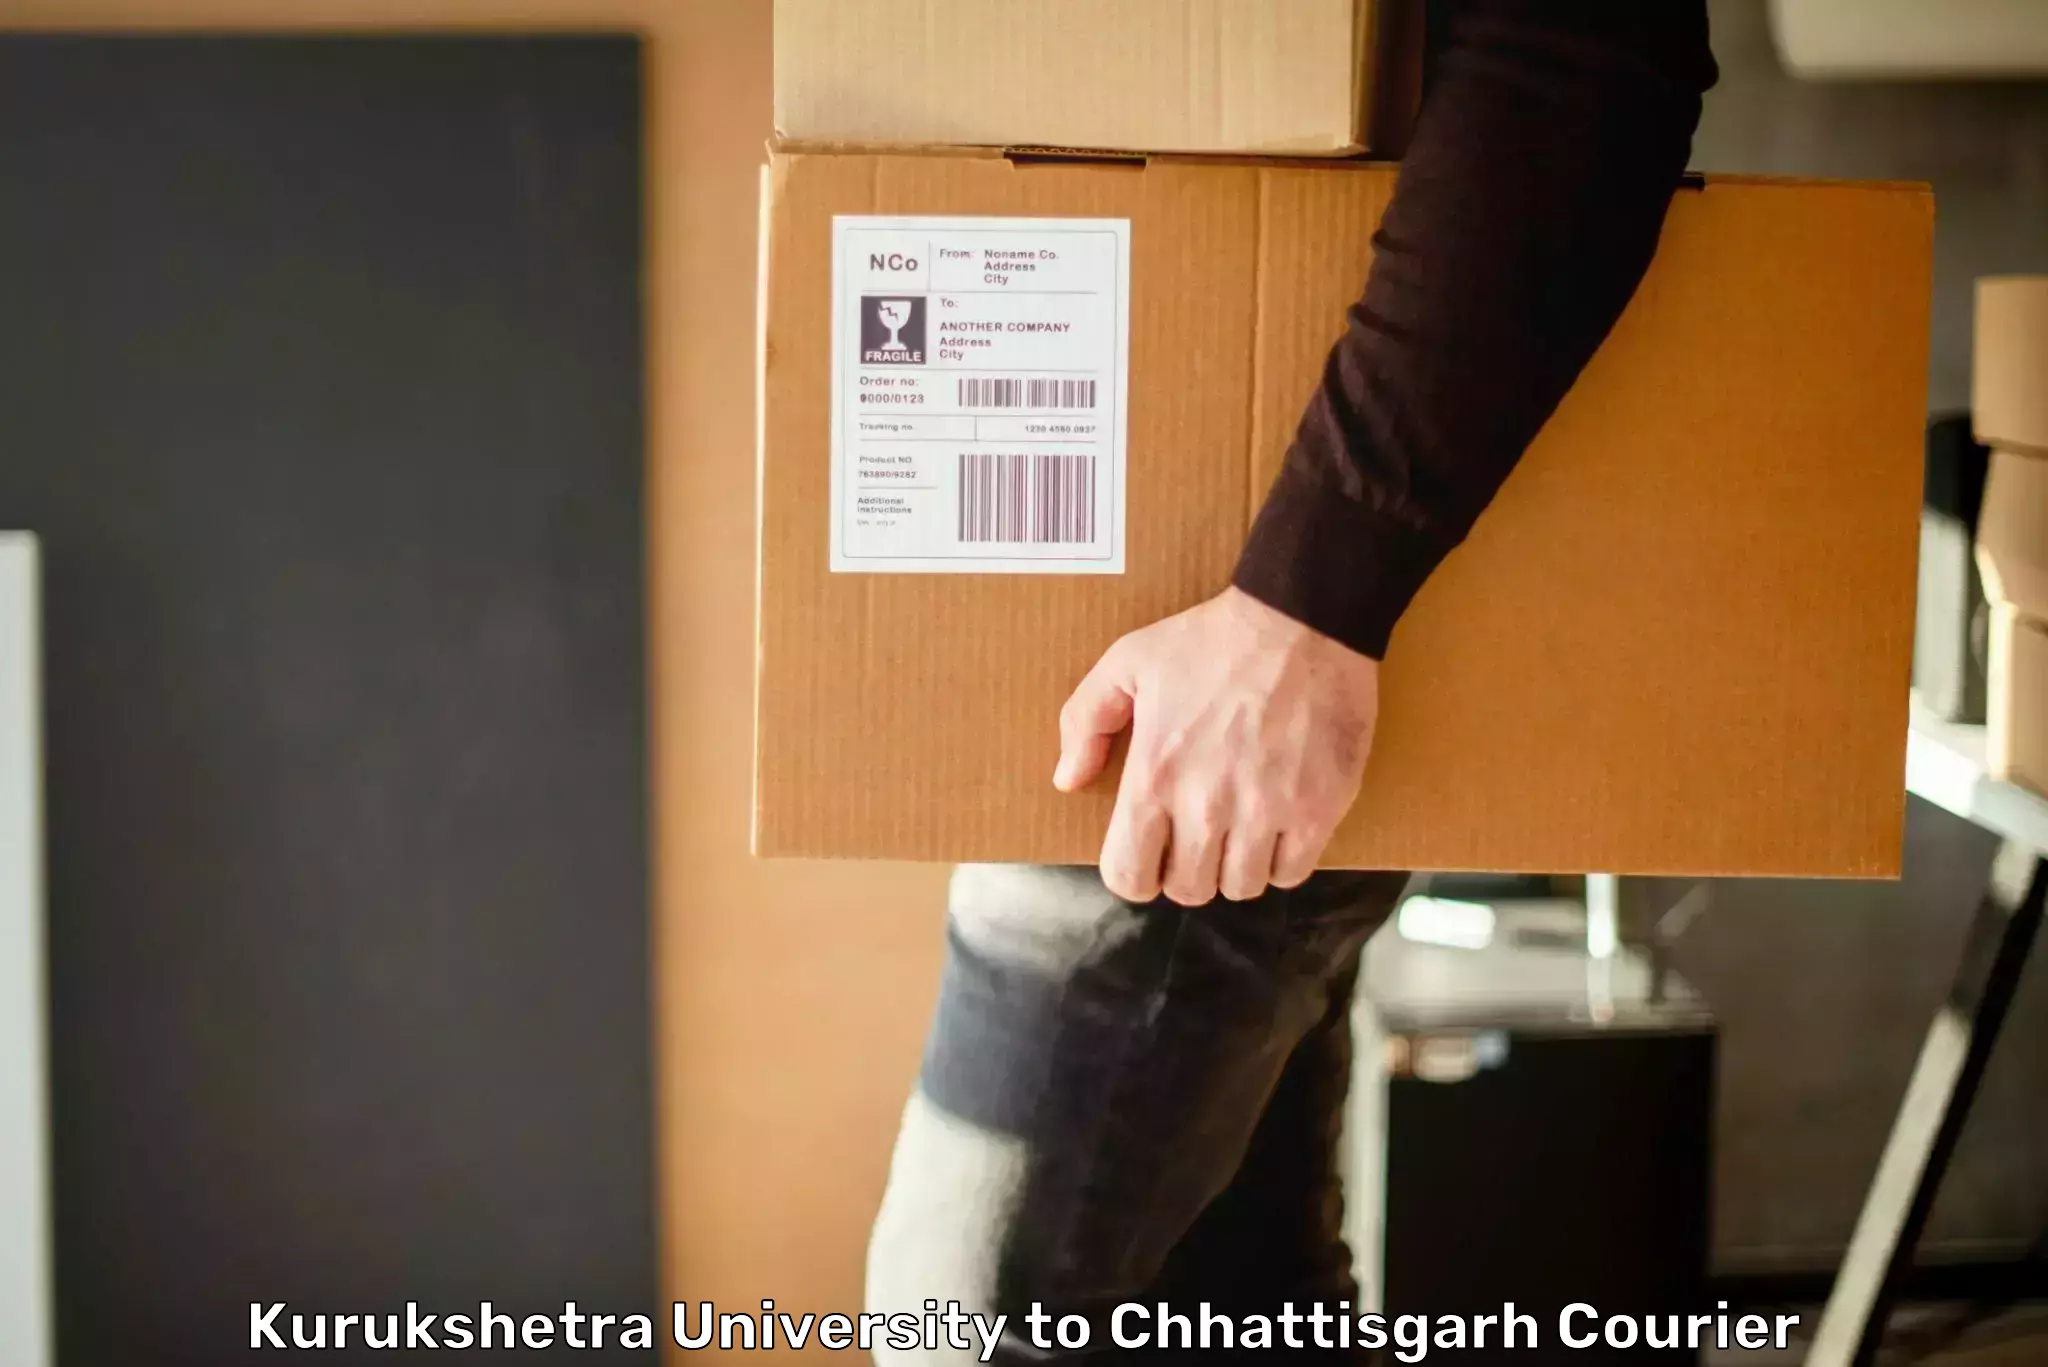 Cost-effective courier options Kurukshetra University to Chhattisgarh